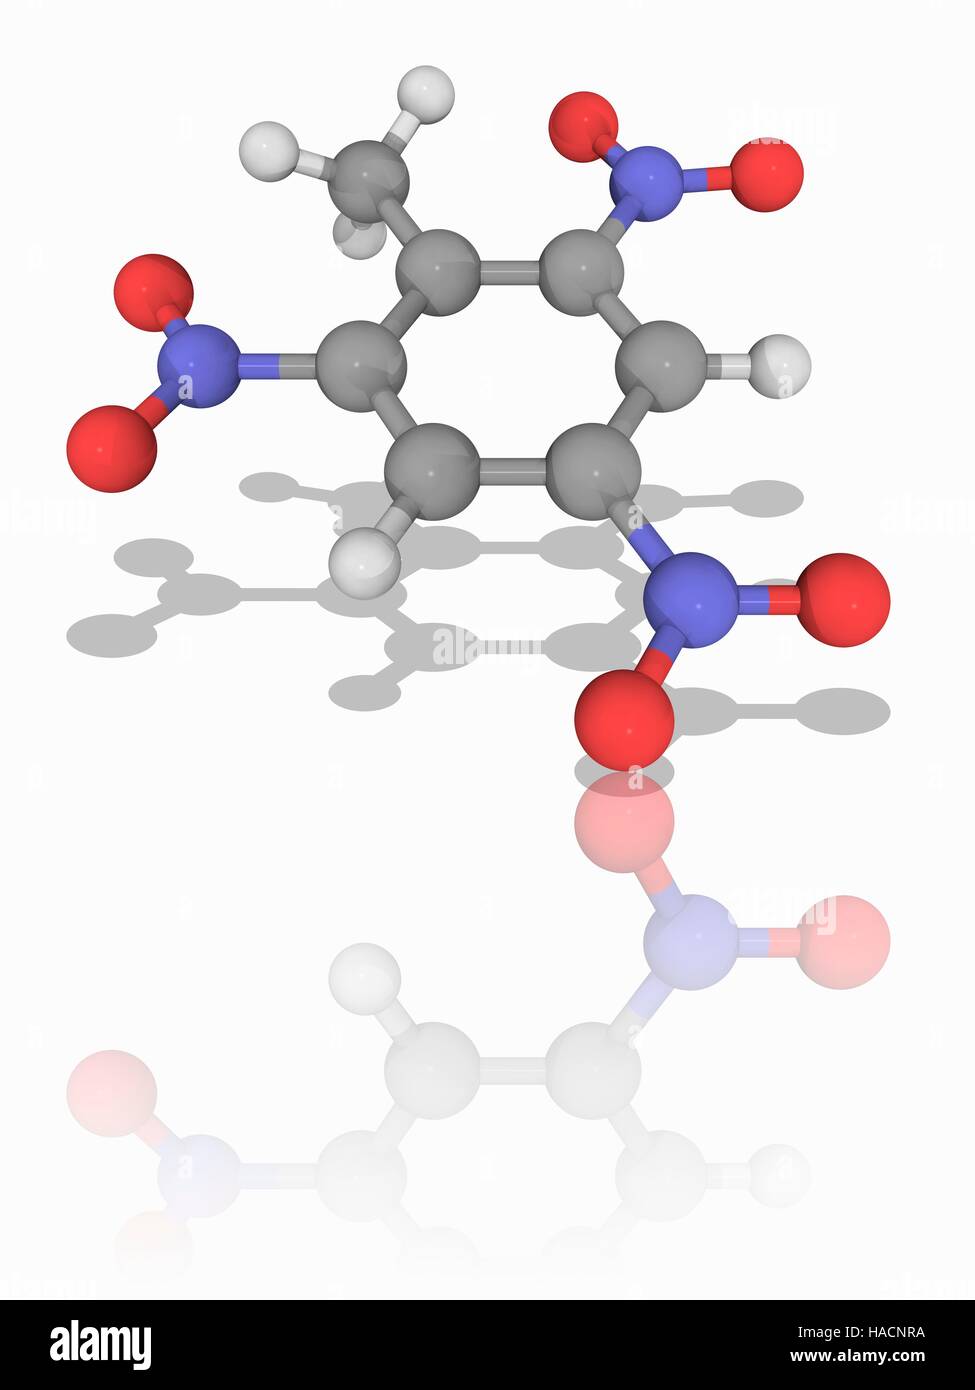 TNT. Modelo molecular de los compuestos orgánicos y explosivo  trinitrotolueno (TNT, .O6). Este es uno de los más comúnmente  utilizado explosivos. Los átomos son representados como esferas y están  codificados por color (